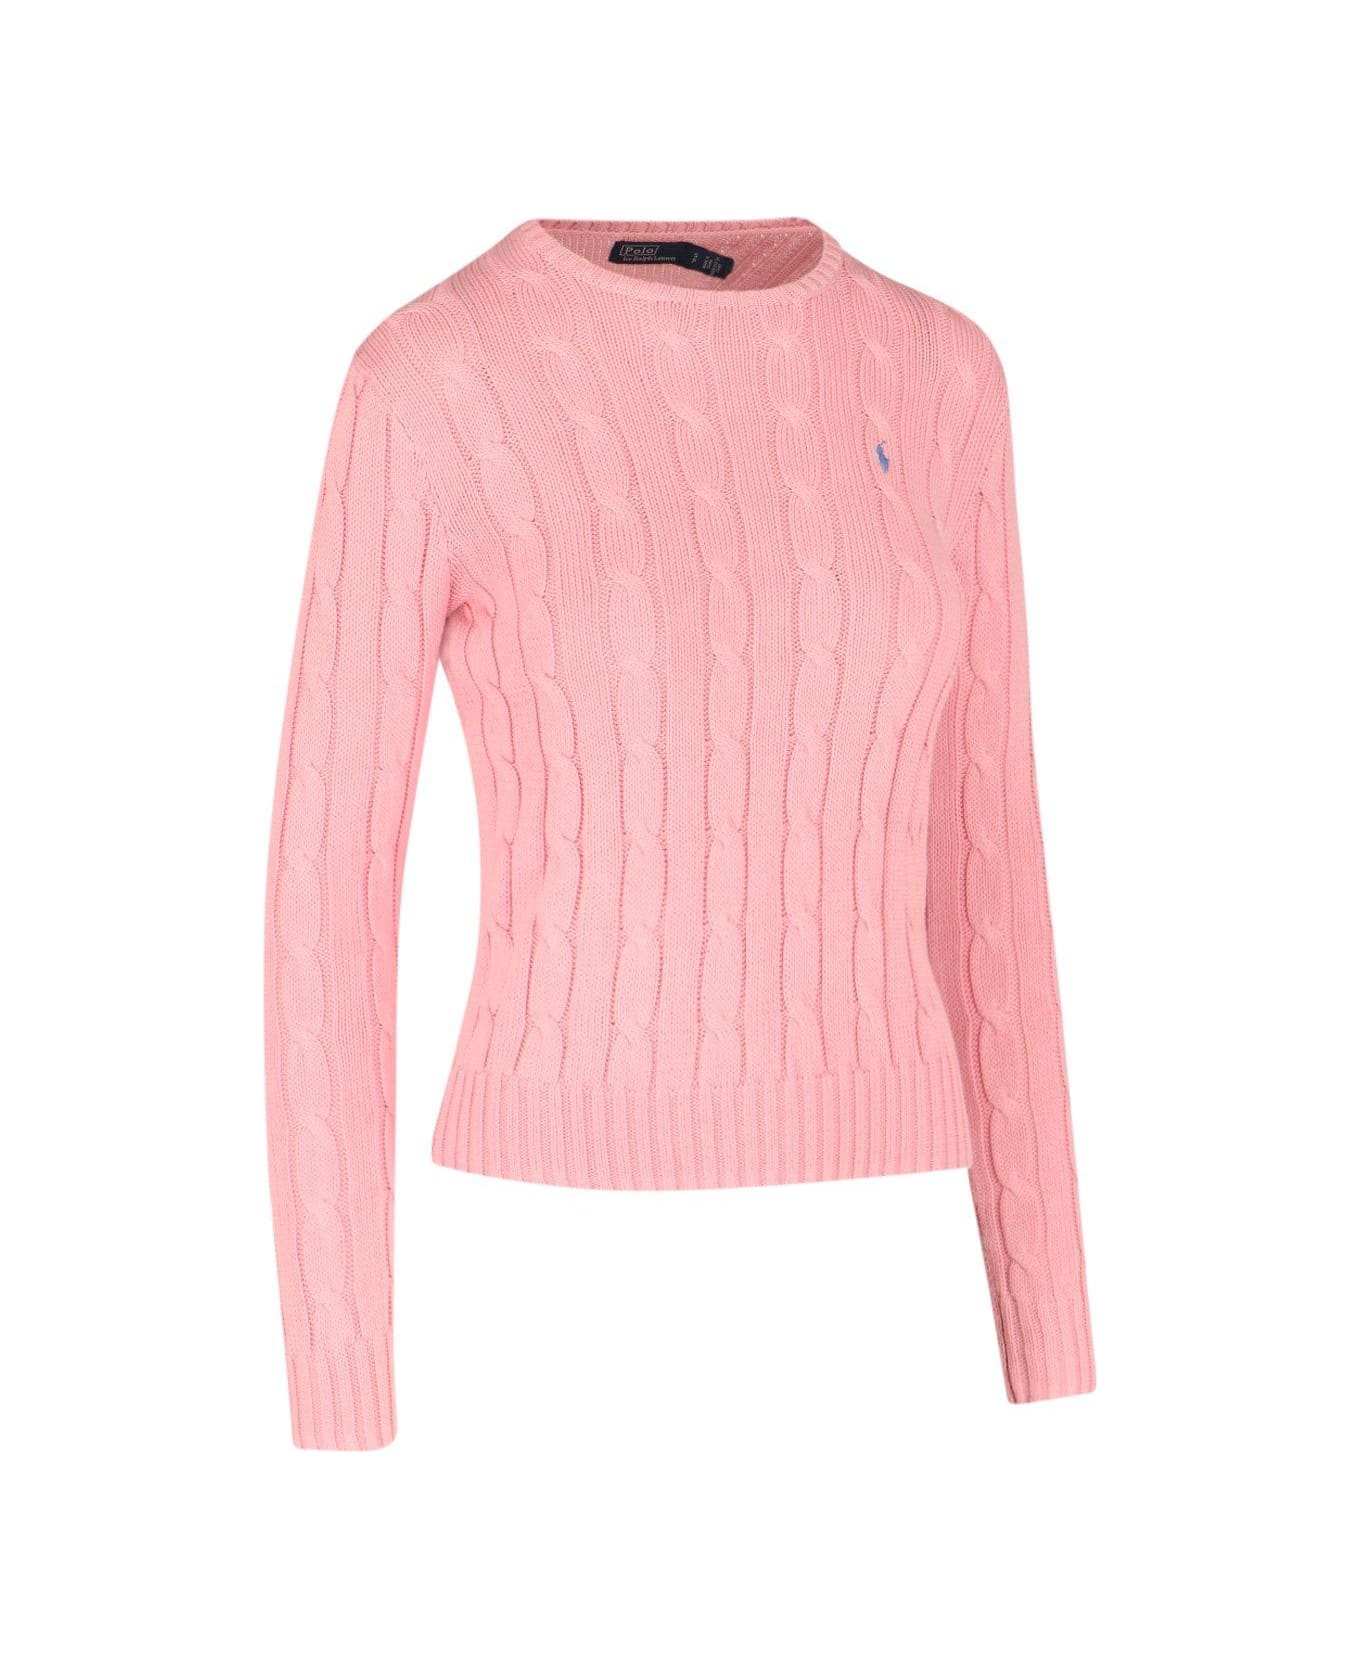 Ralph Lauren Julianna Long Sleeve Sweater - pink